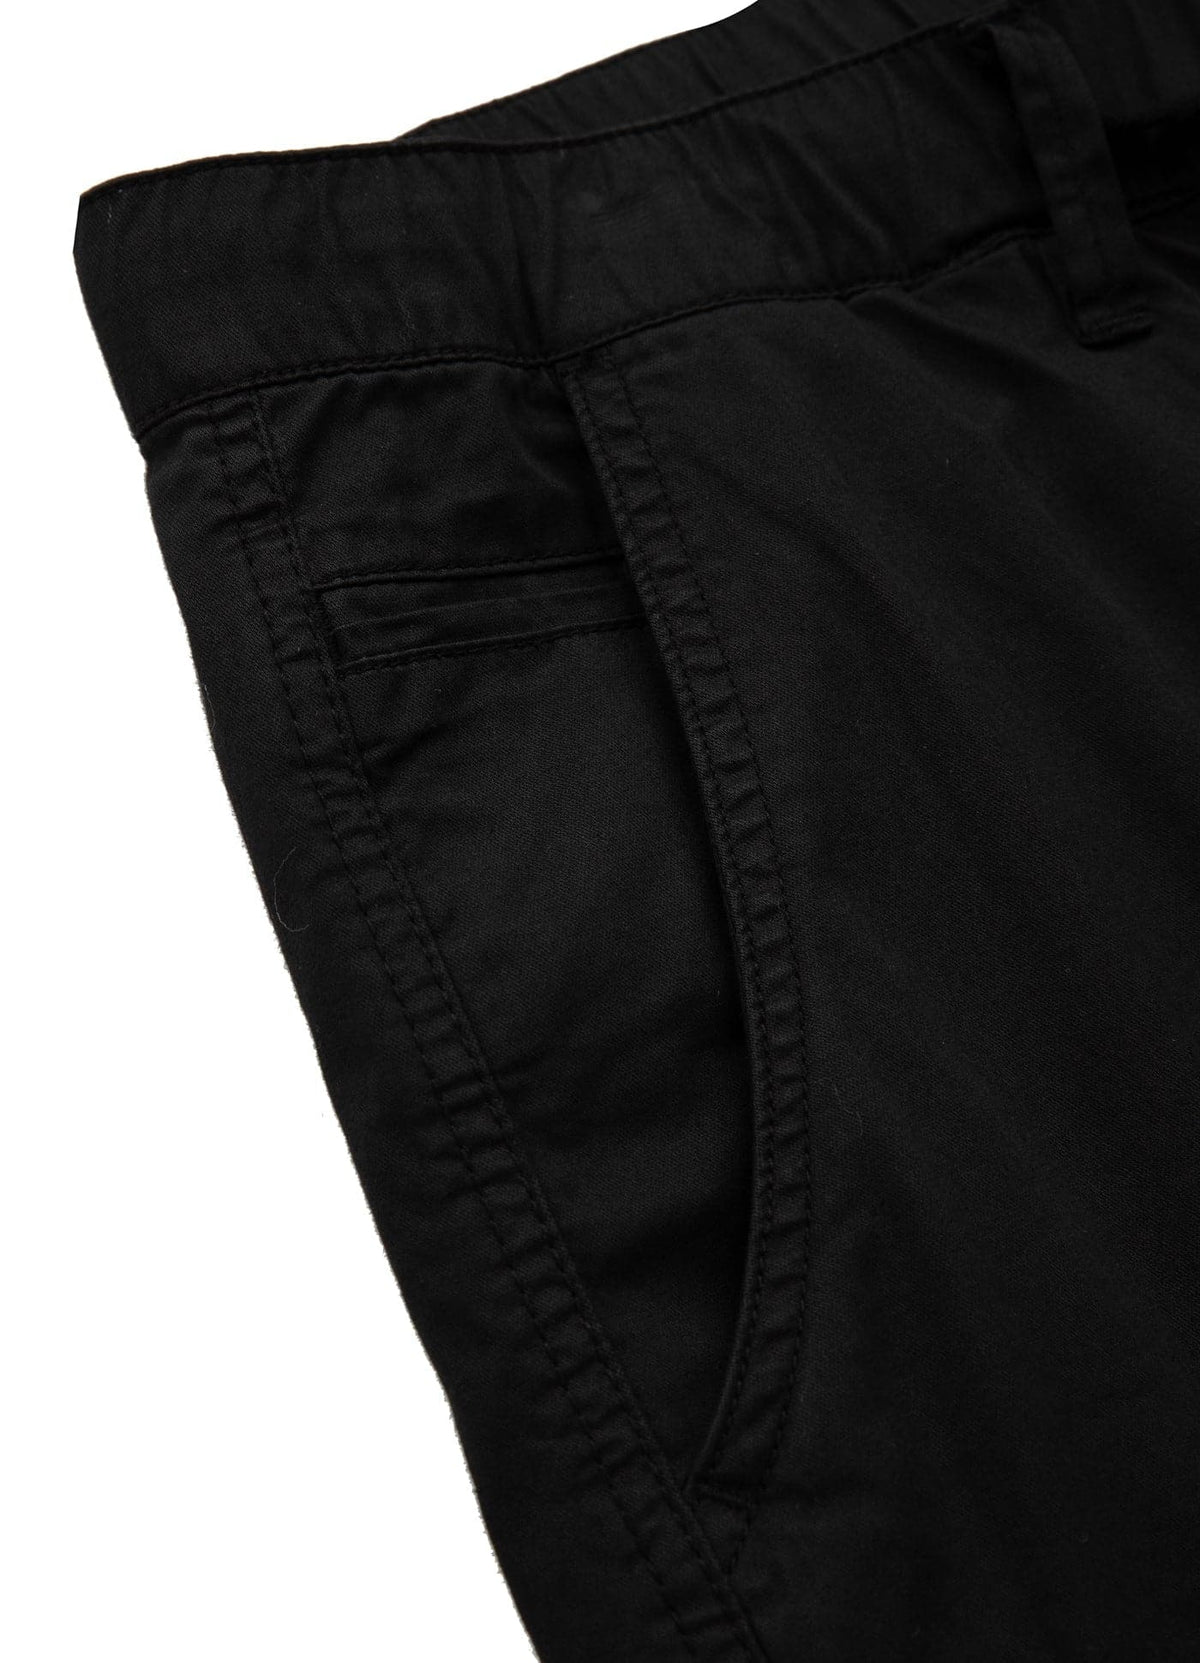 SKYLINE Black Cargo Shorts